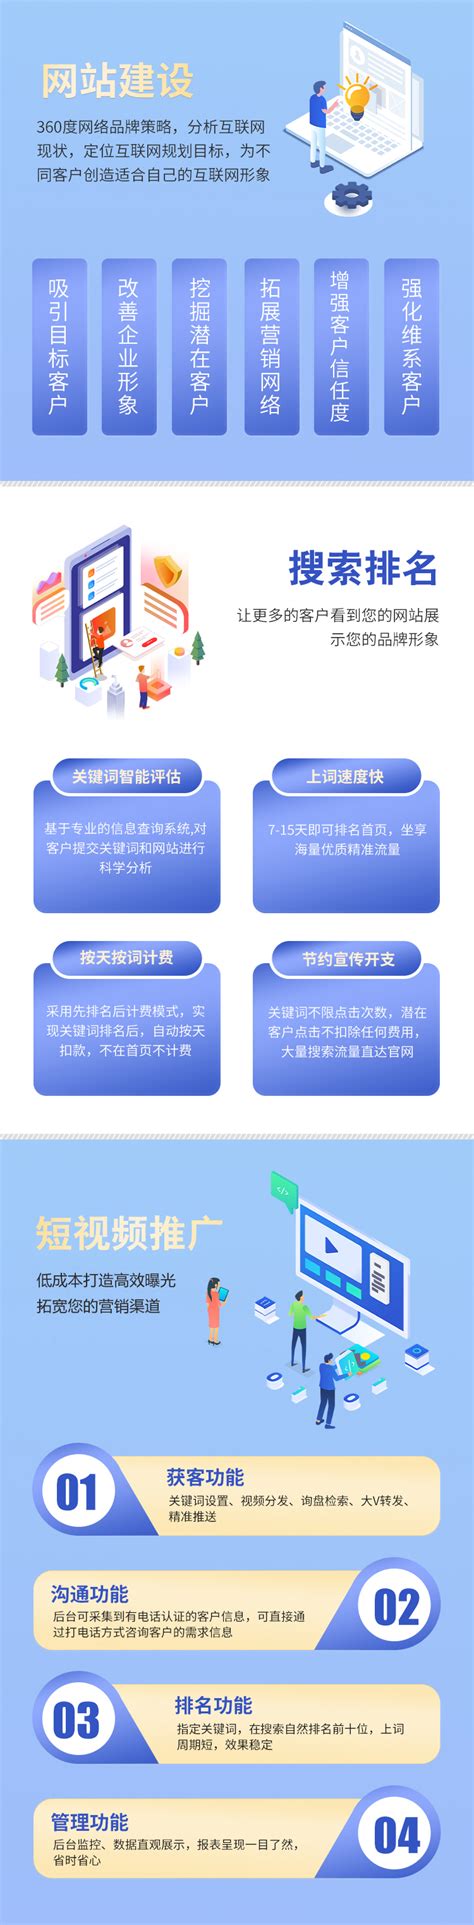 广东网站建设系统费用